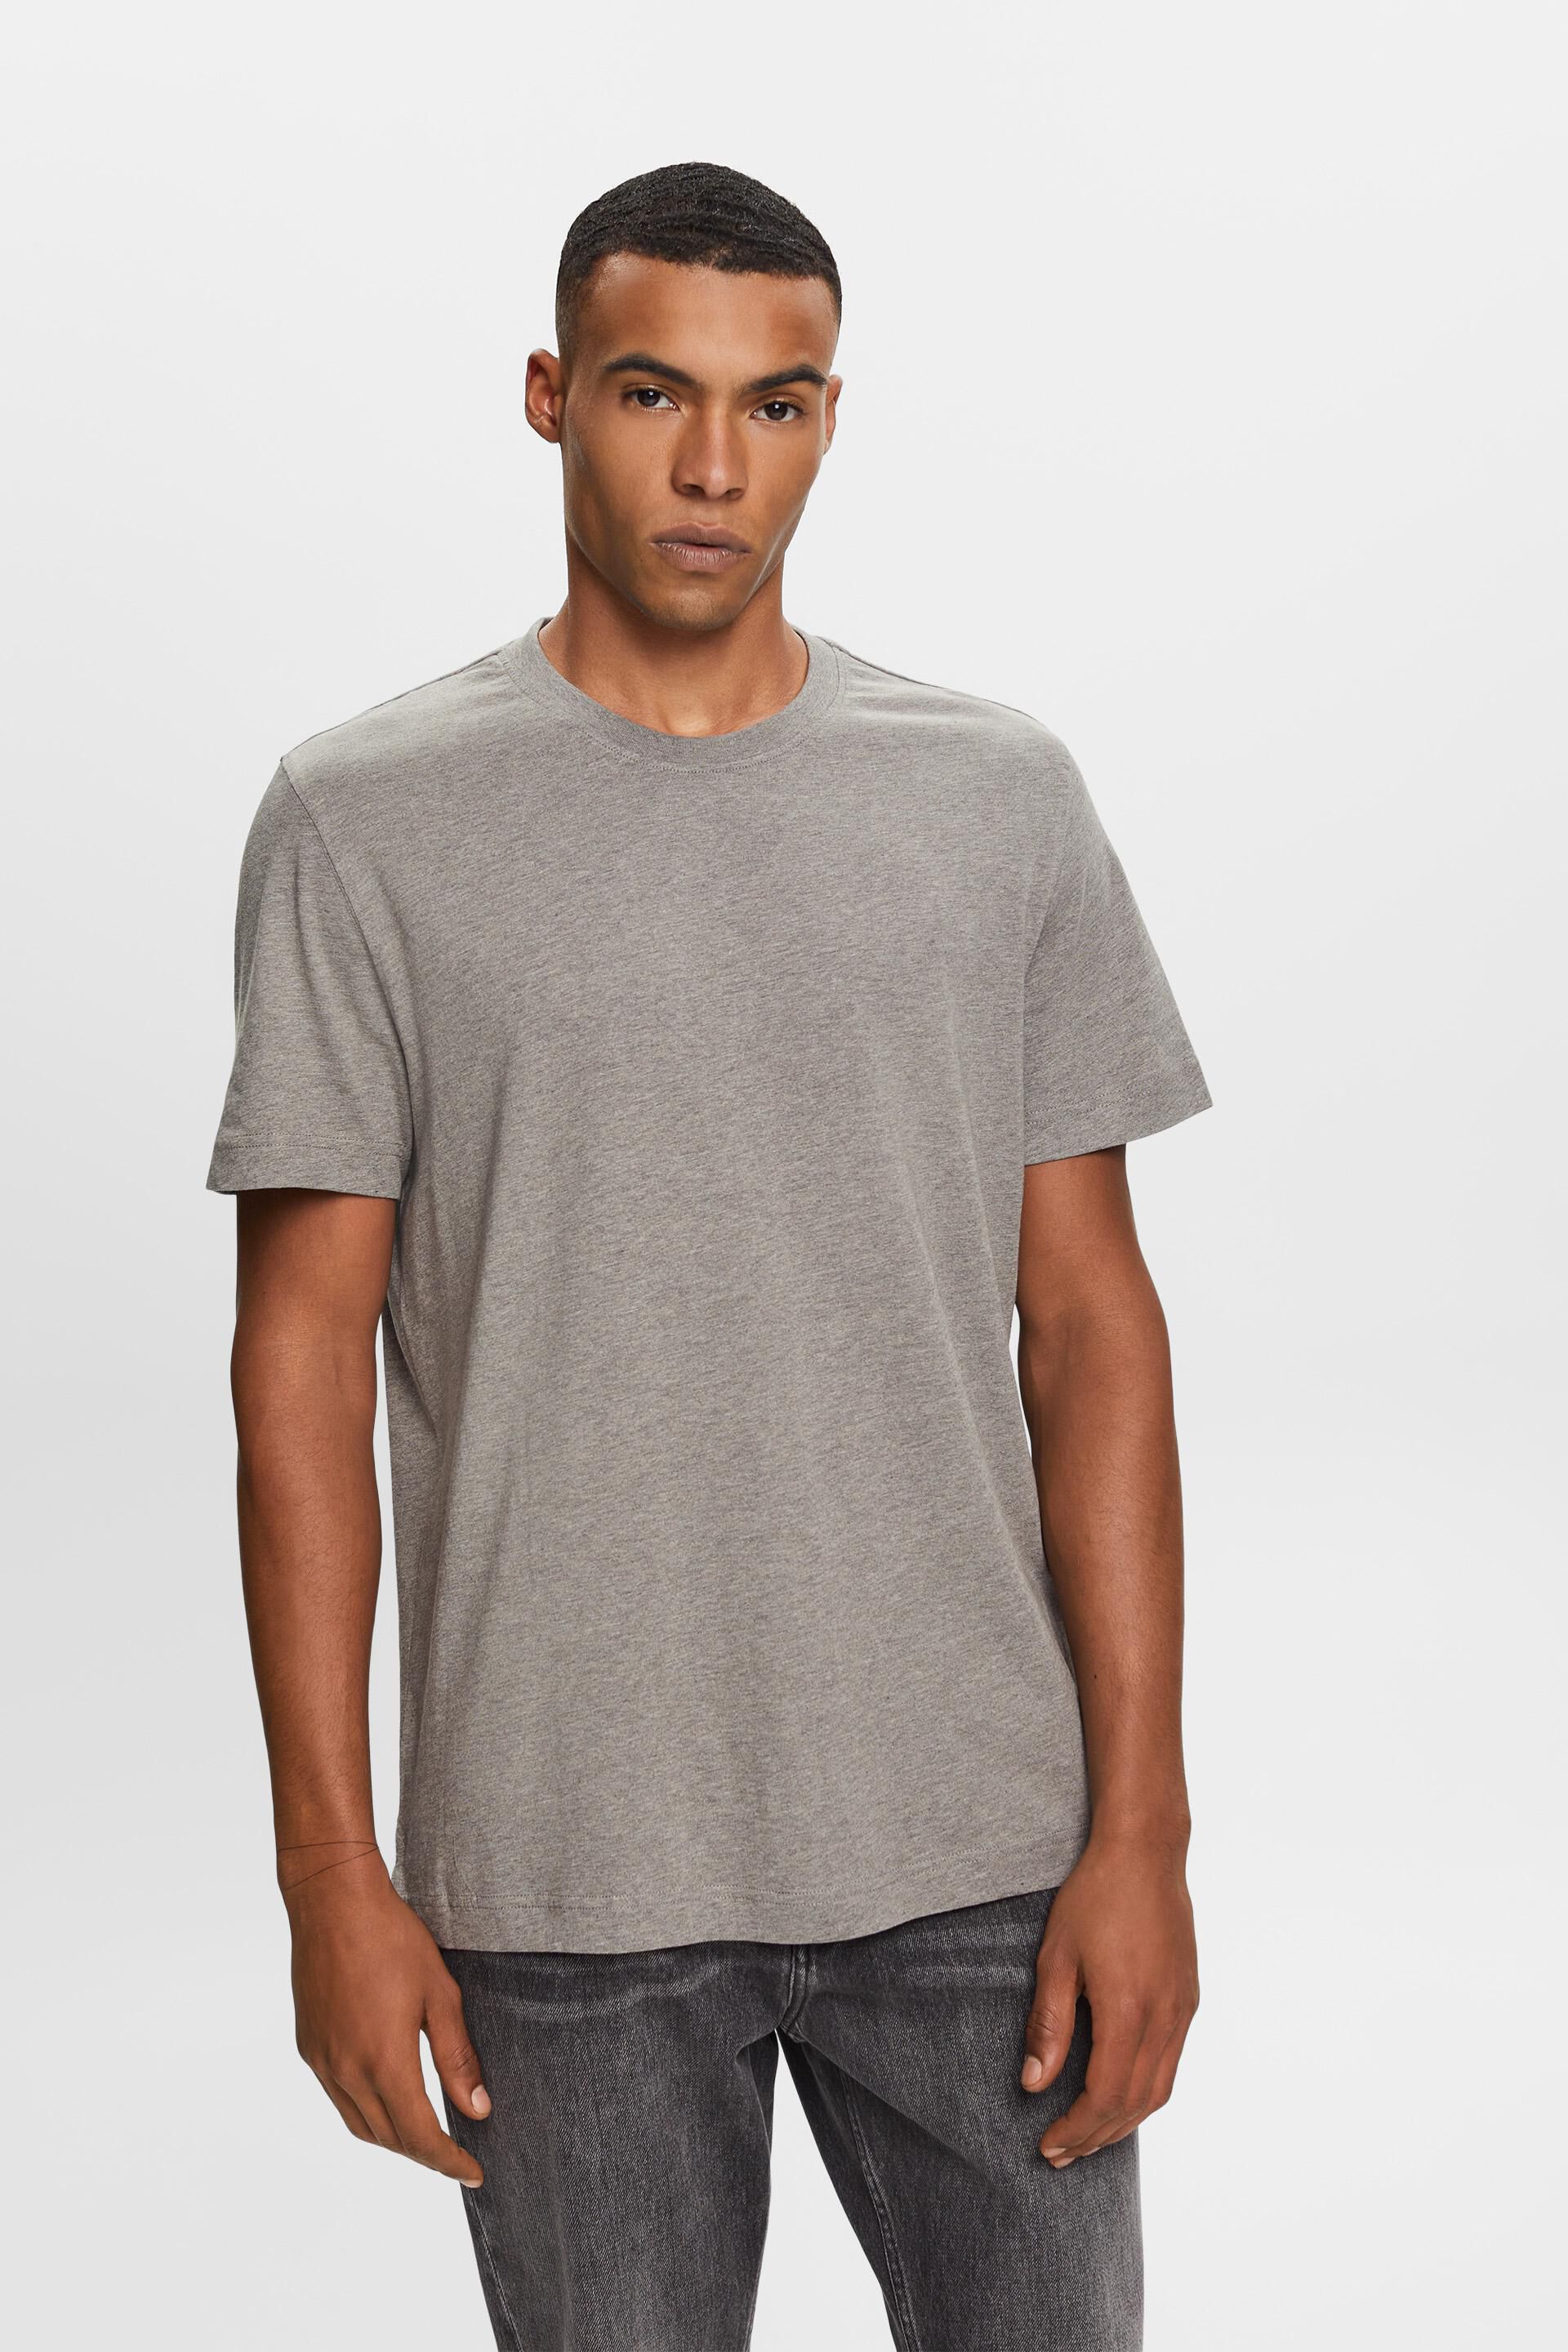 Esprit 100% t-shirt, cotton Crewneck